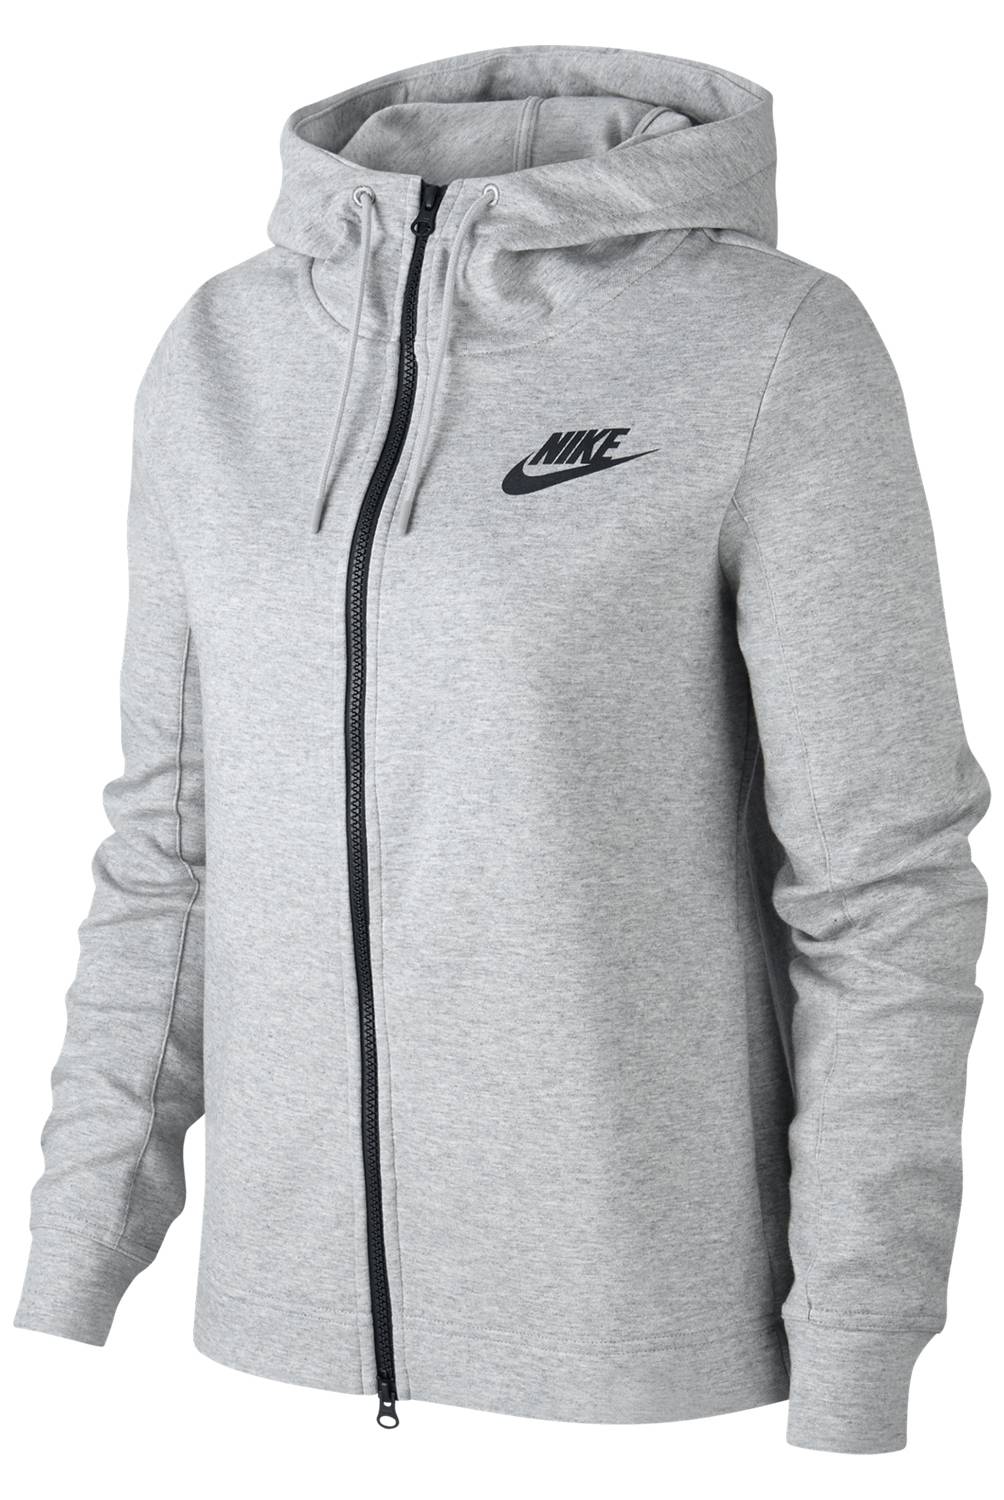 Nike - Polerón Sportswear Optic